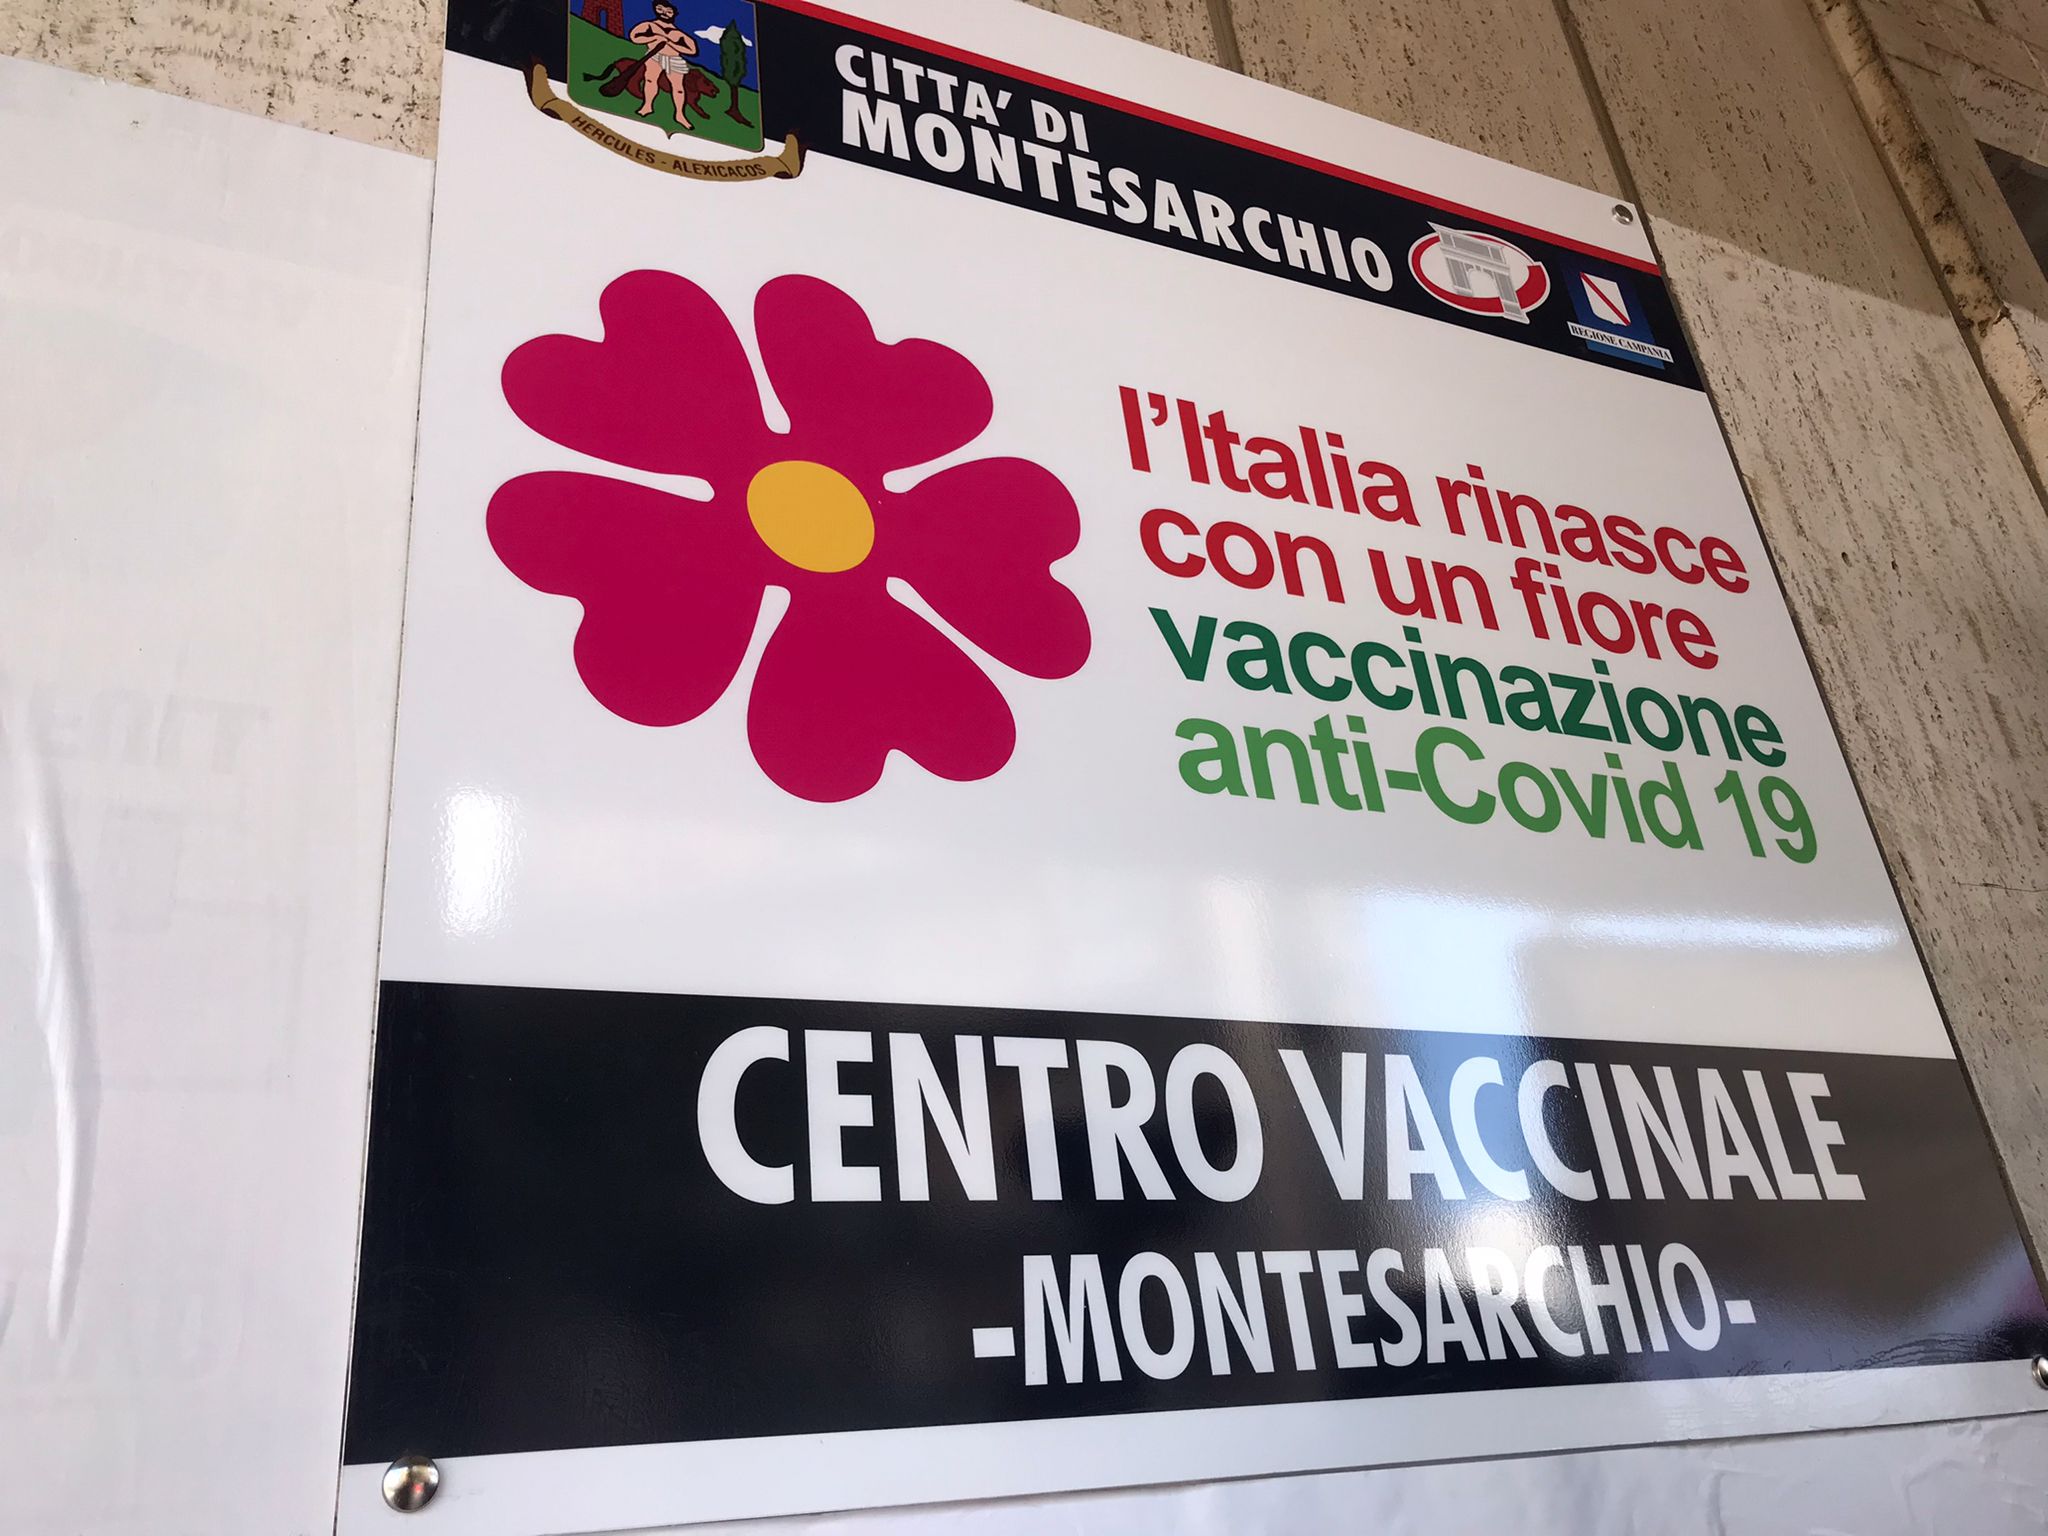 Montesarchio, il M5S: “All’hub vaccinale problemi organizzativi, lunghe attese e affollamenti”